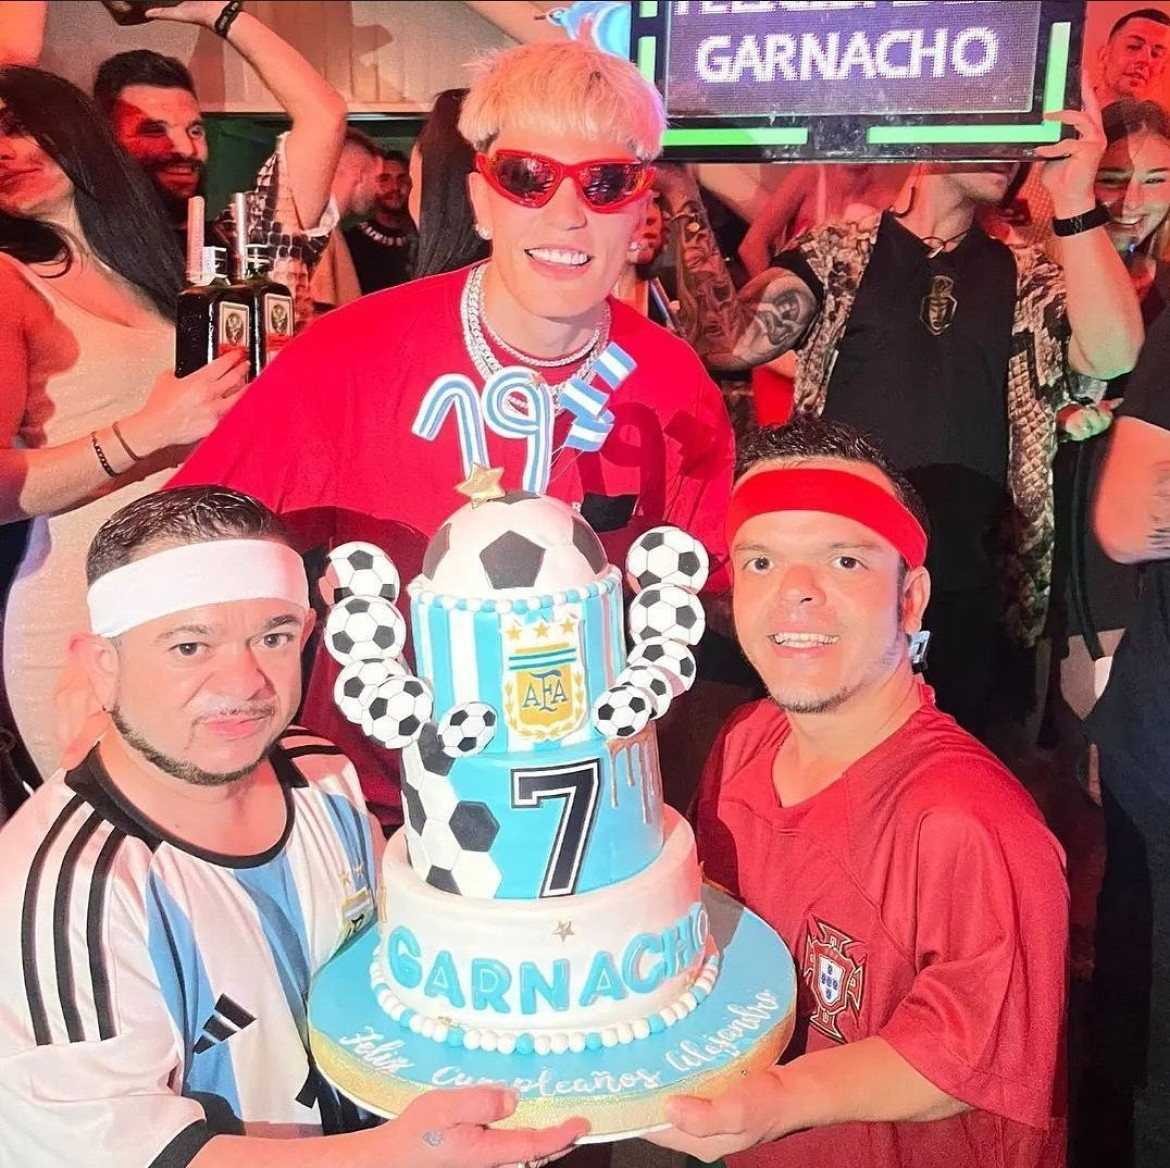 Alejandro Garnacho festejó su cumpleaños con una llamativa fiesta. Foto: Instagram.